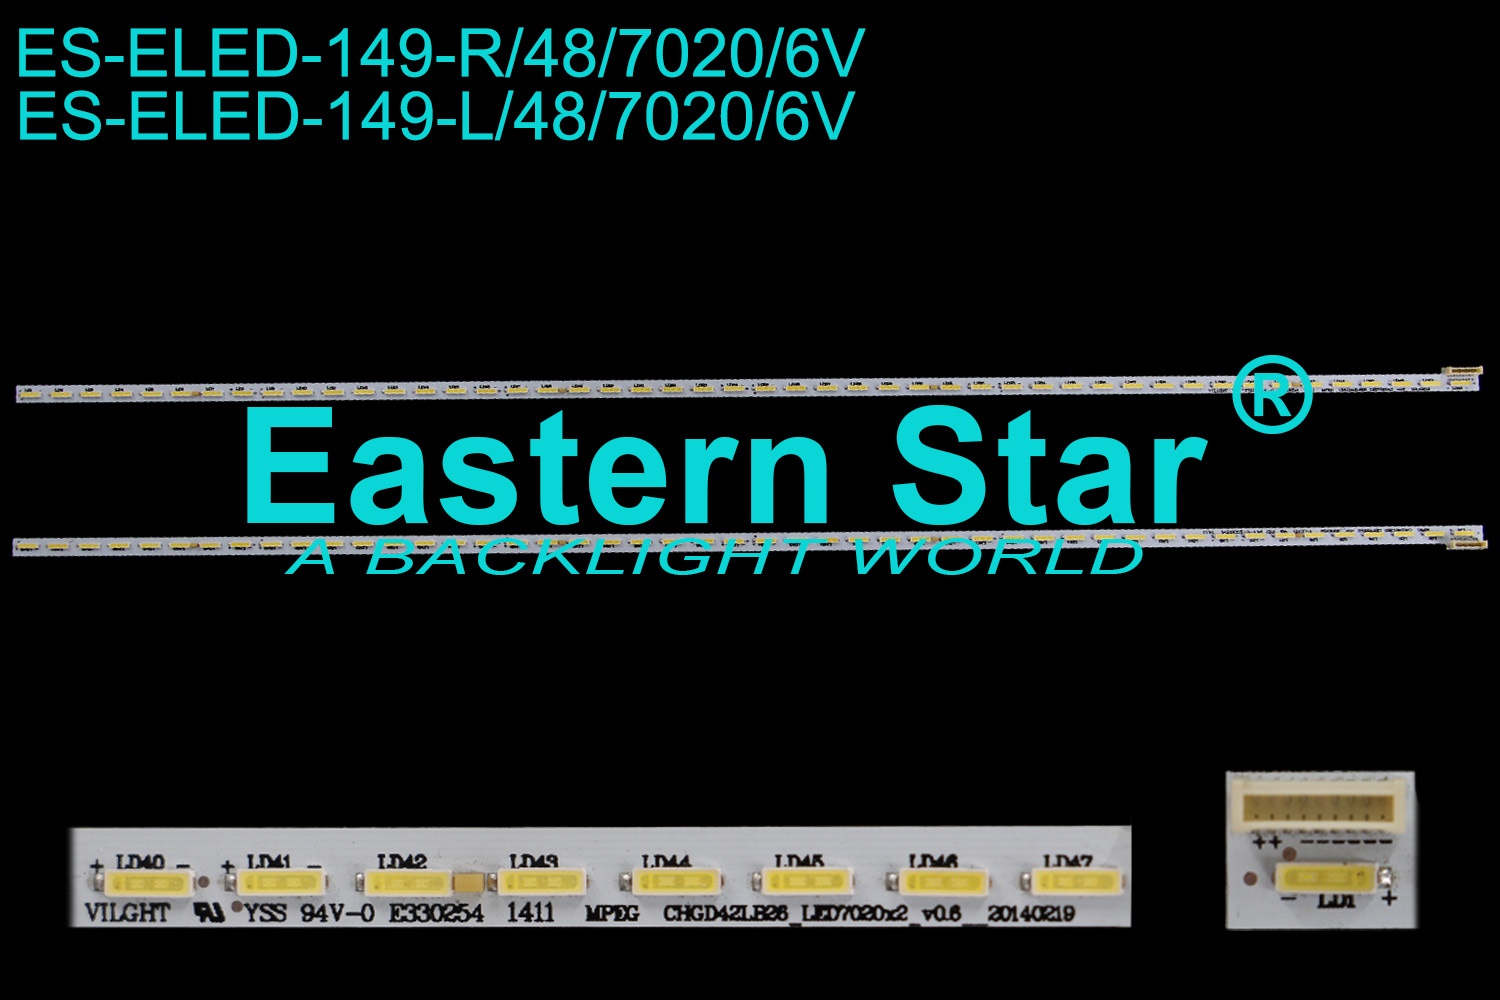 ES-ELED-149 ELED/EDGE TV backlight 42'' 48LEDs CHGD42LB25/6 LED7020X2_v0.6__20140219/94V-0 E330254 1410/1 led strips(2)